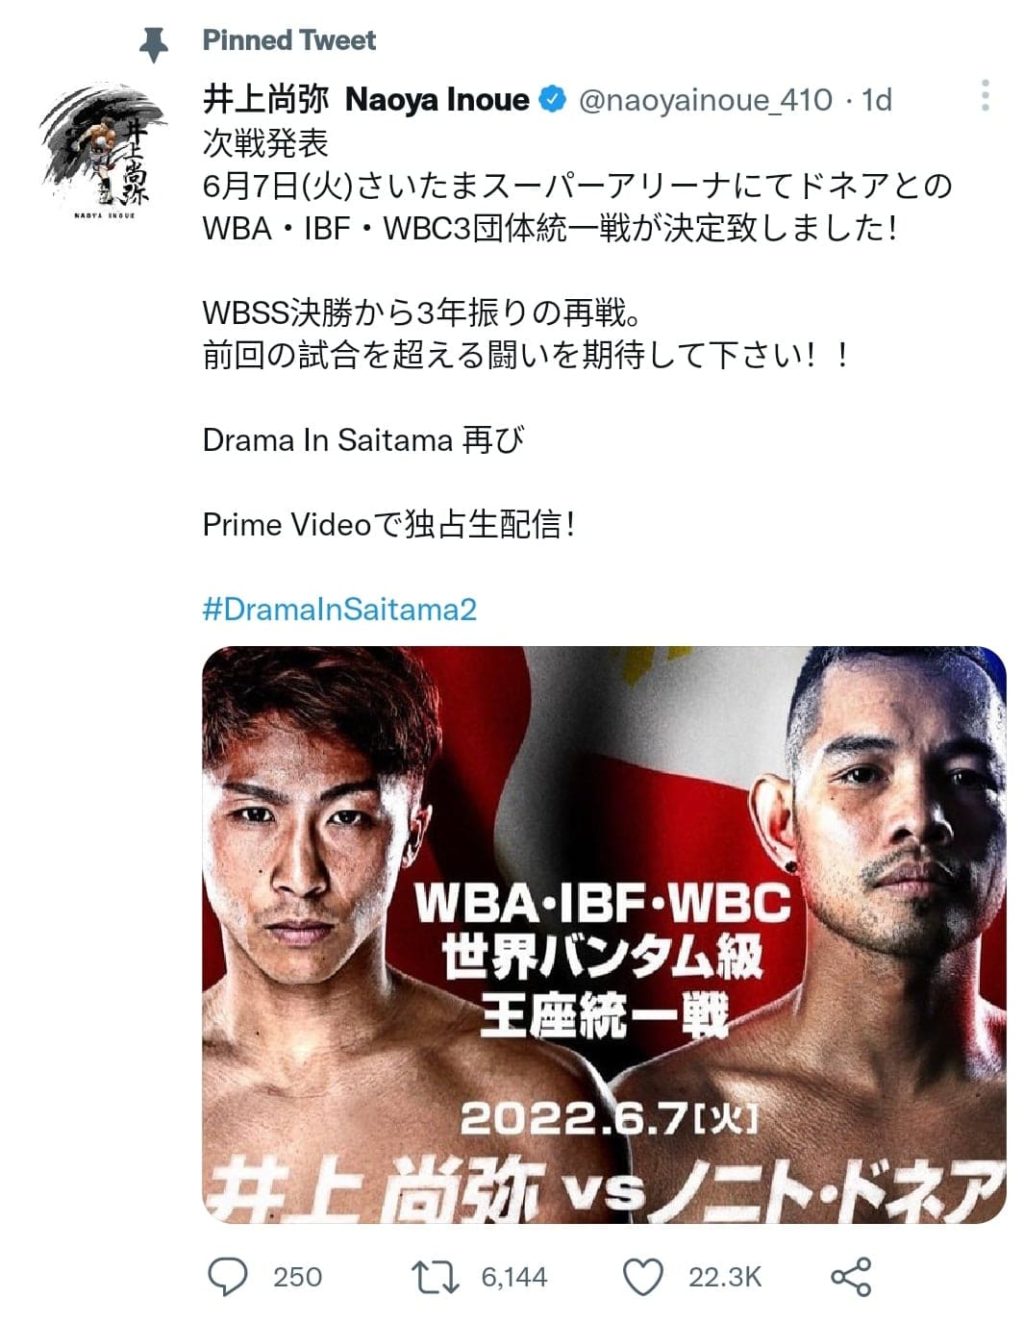 Inoue's announcement